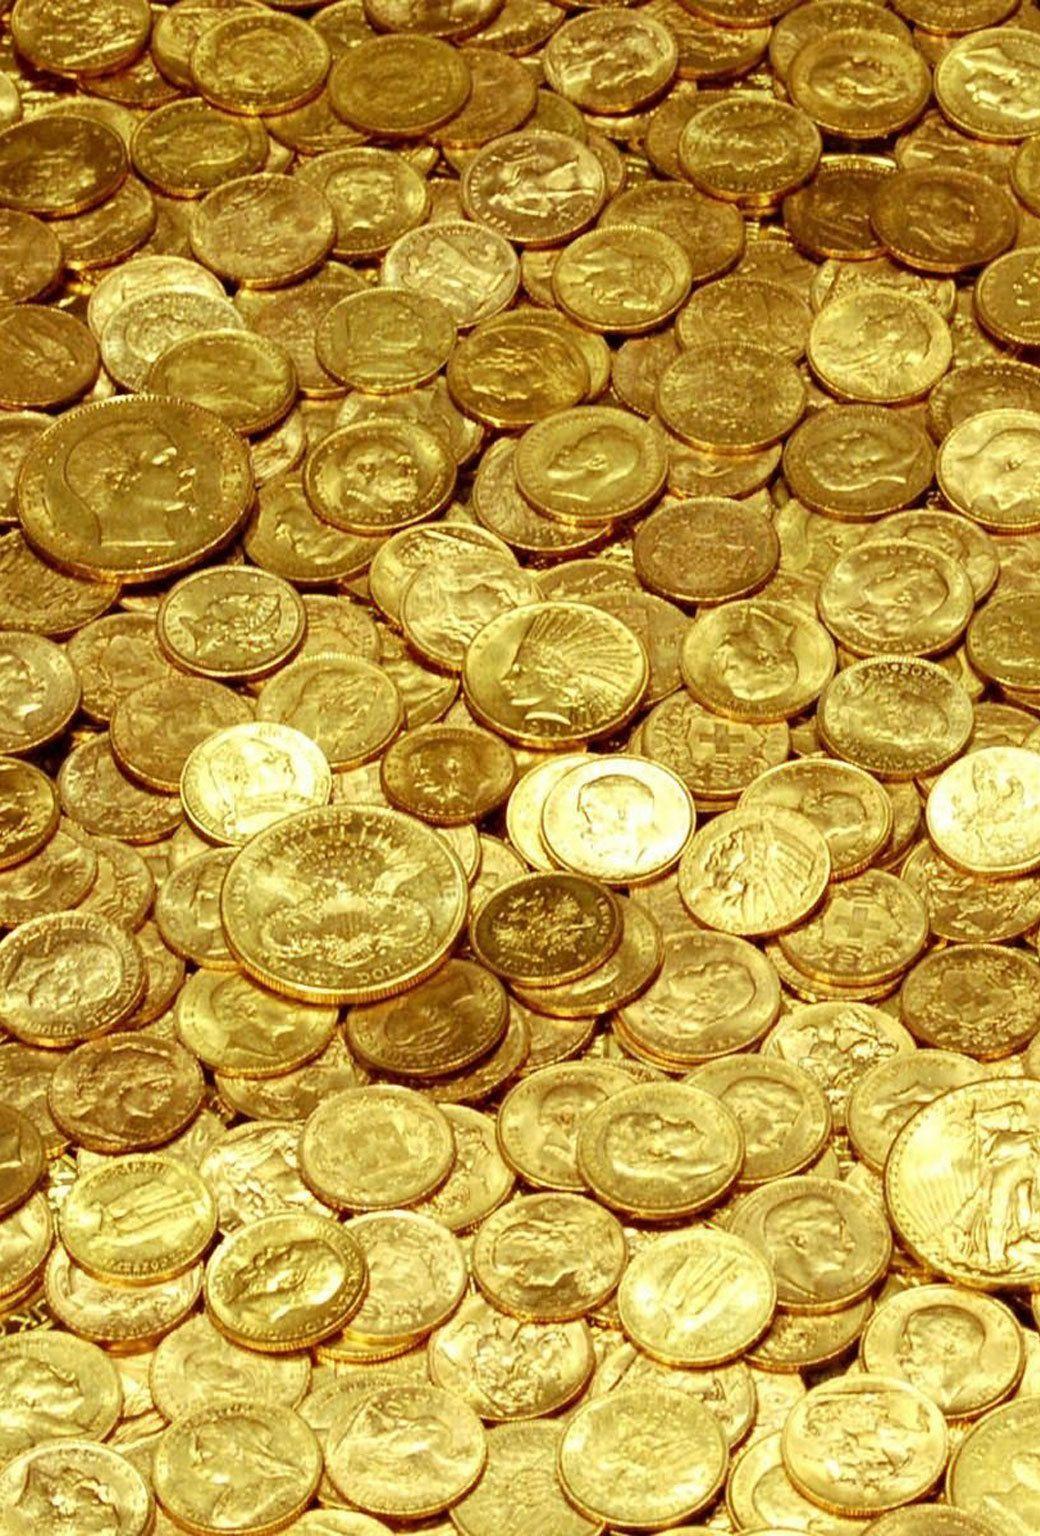 تصویر دریایی از سکه های طلا برای دانلود پس زمینه 